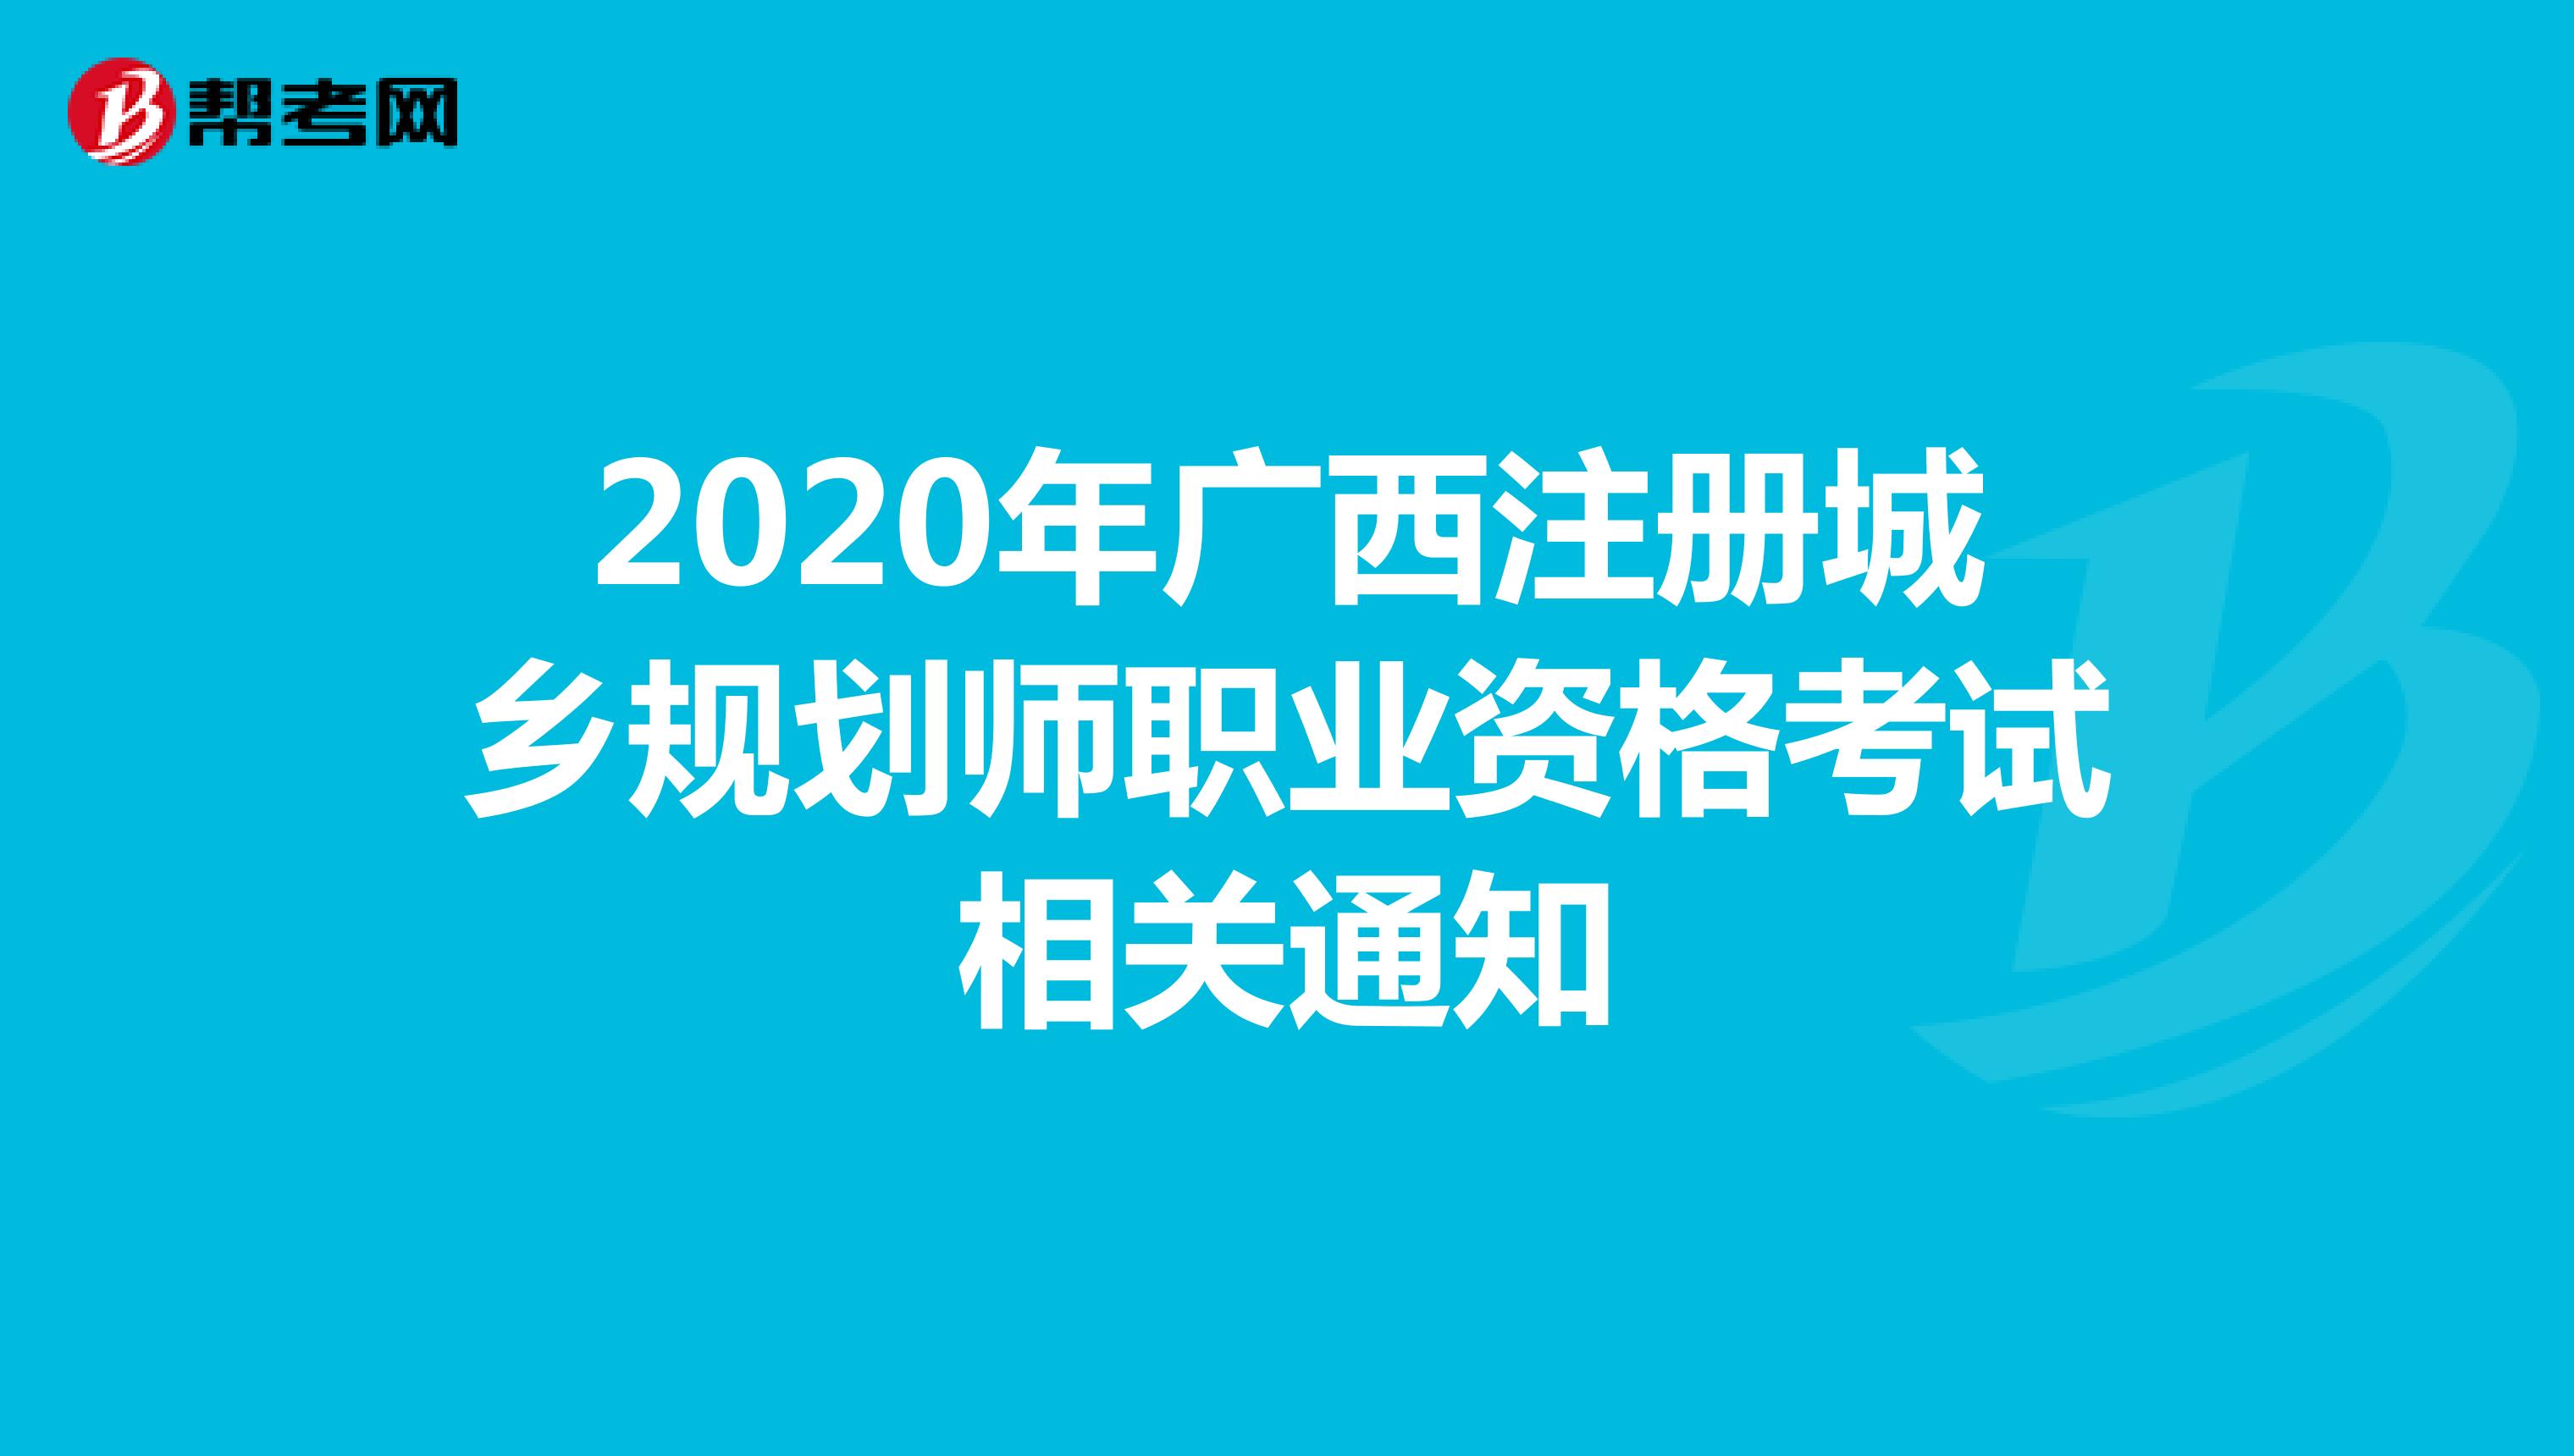 2020年广西注册城乡规划师职业资格考试相关通知